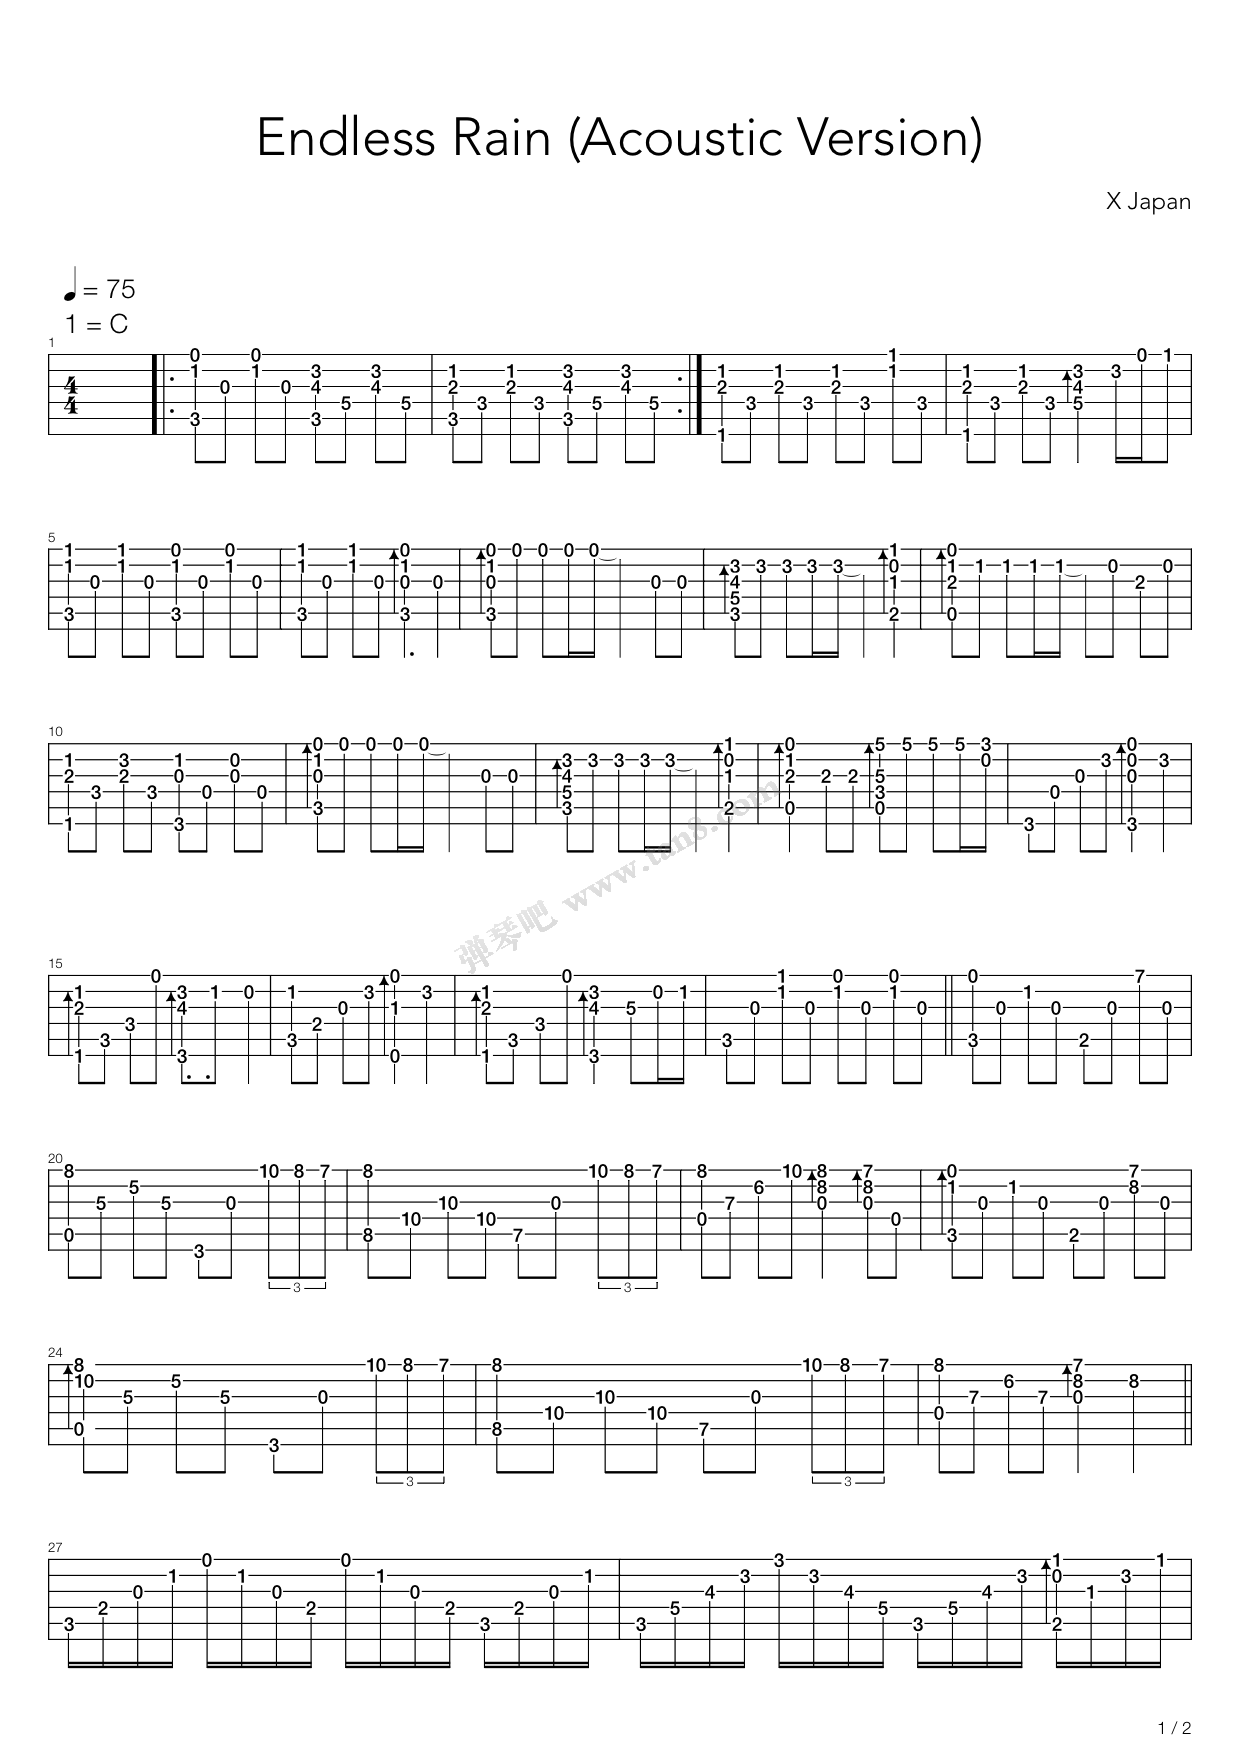 X Japan-Endless Rain Sheet Music pdf, - Free Score Download ★